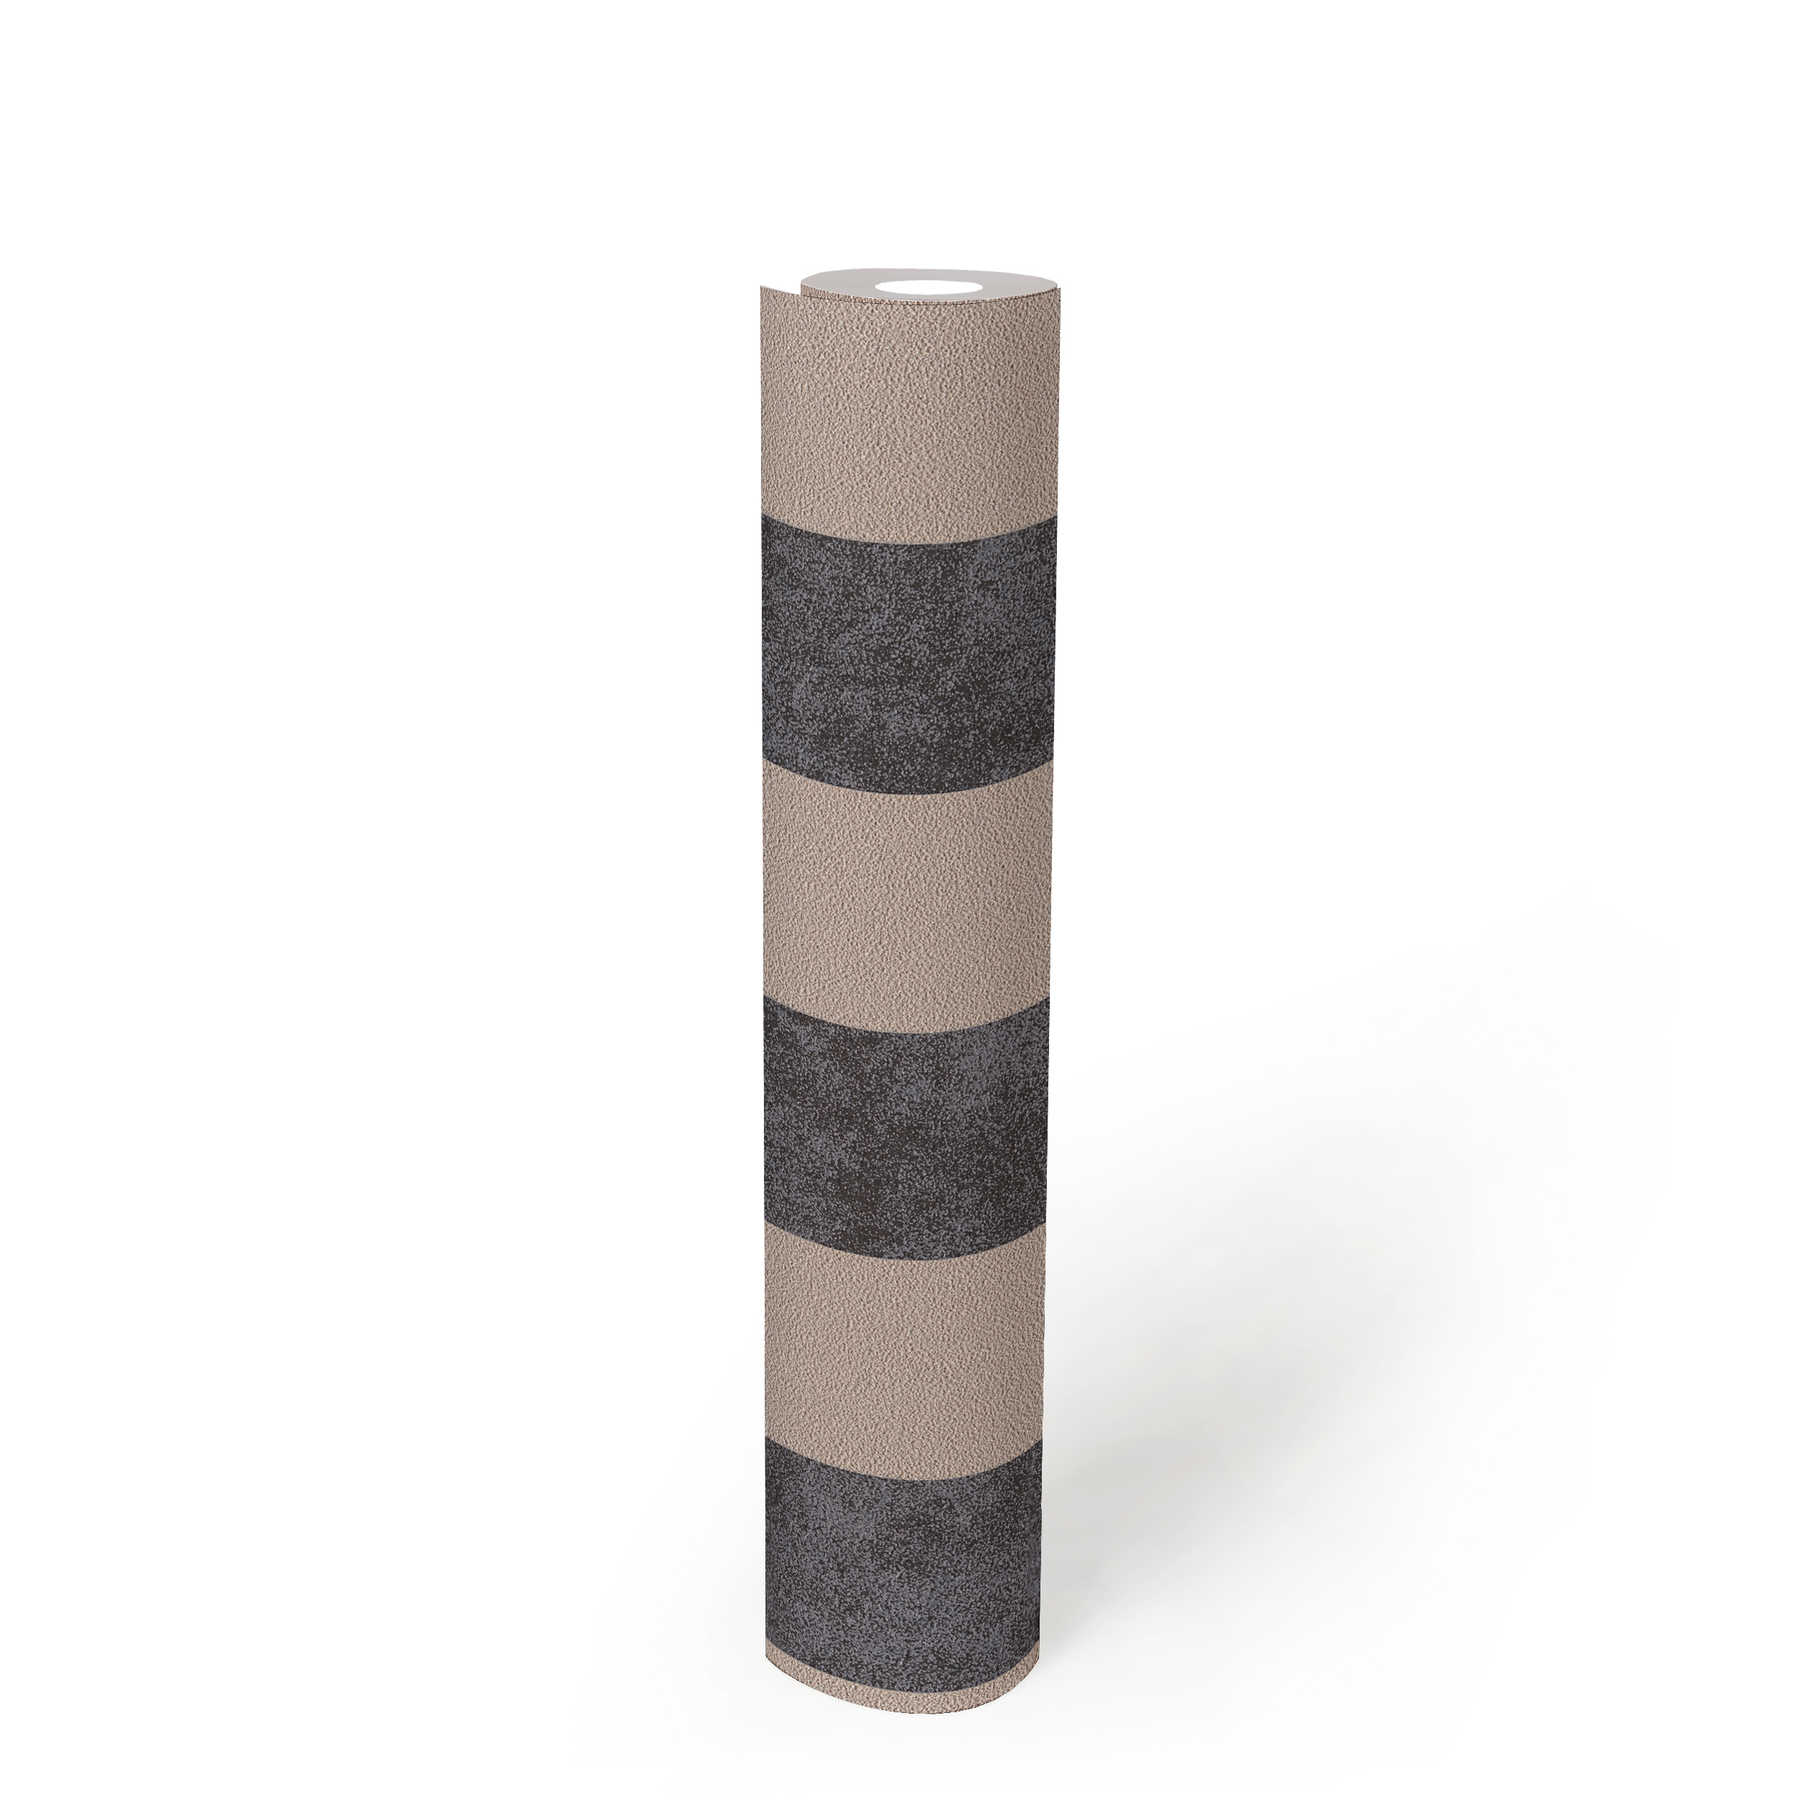             Papier peint à rayures en bloc avec motifs colorés et texturés - noir, beige, argenté
        